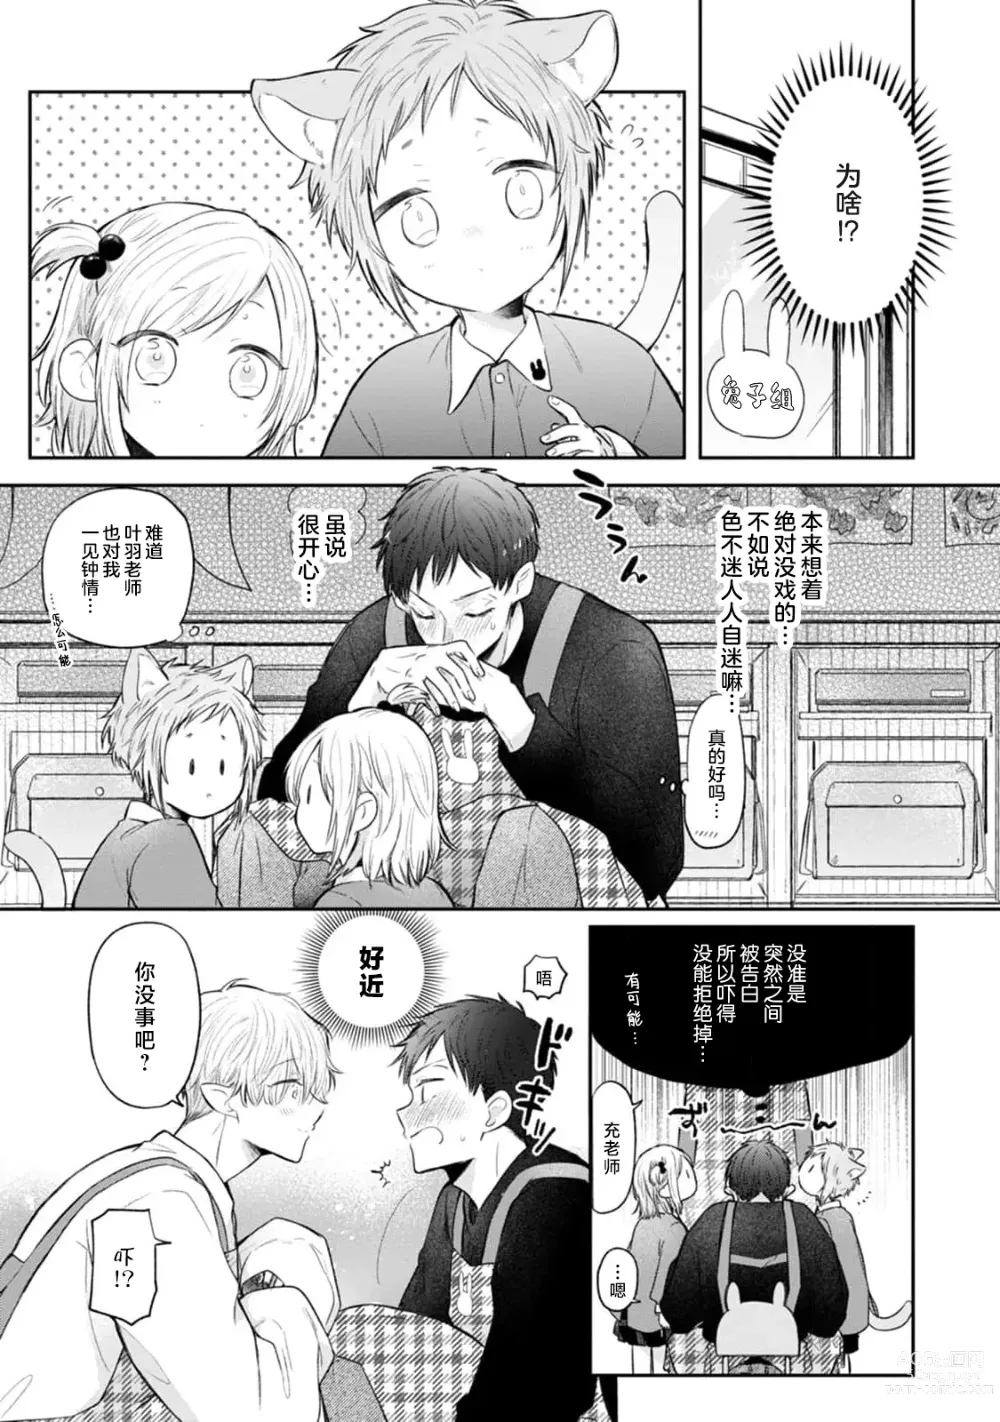 Page 9 of manga 叶羽老师全部是第一次 1-4